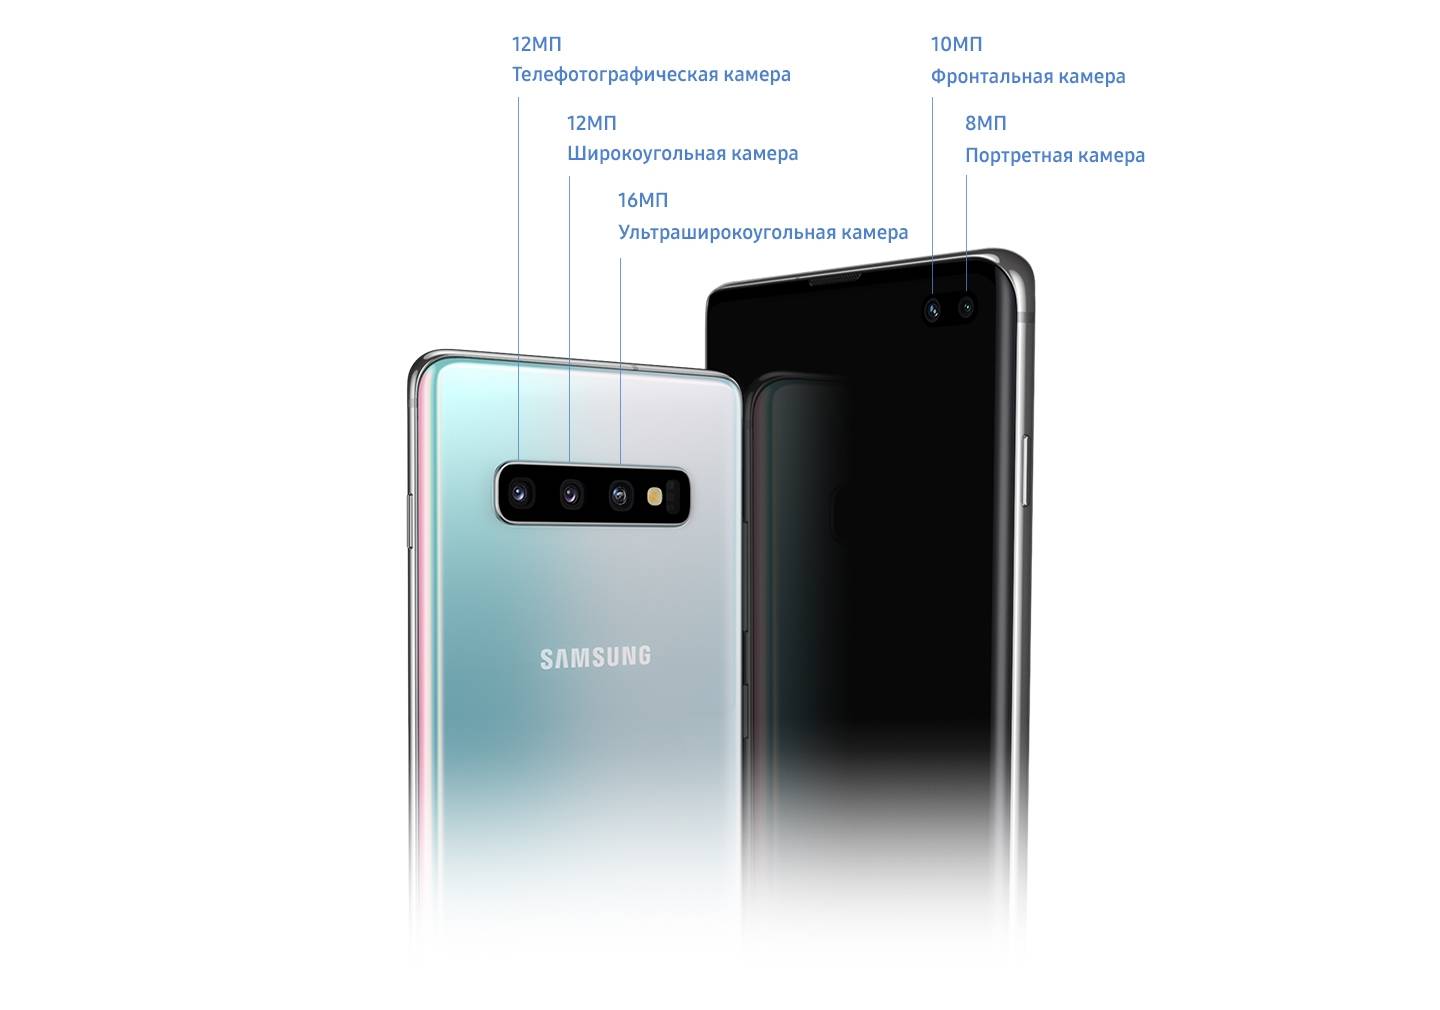 Samsung galaxy s9 — потрясающая мощь и новые возможности камеры. samsung galaxy s9 – обзор со всех сторон новый метод идентификации пользователя